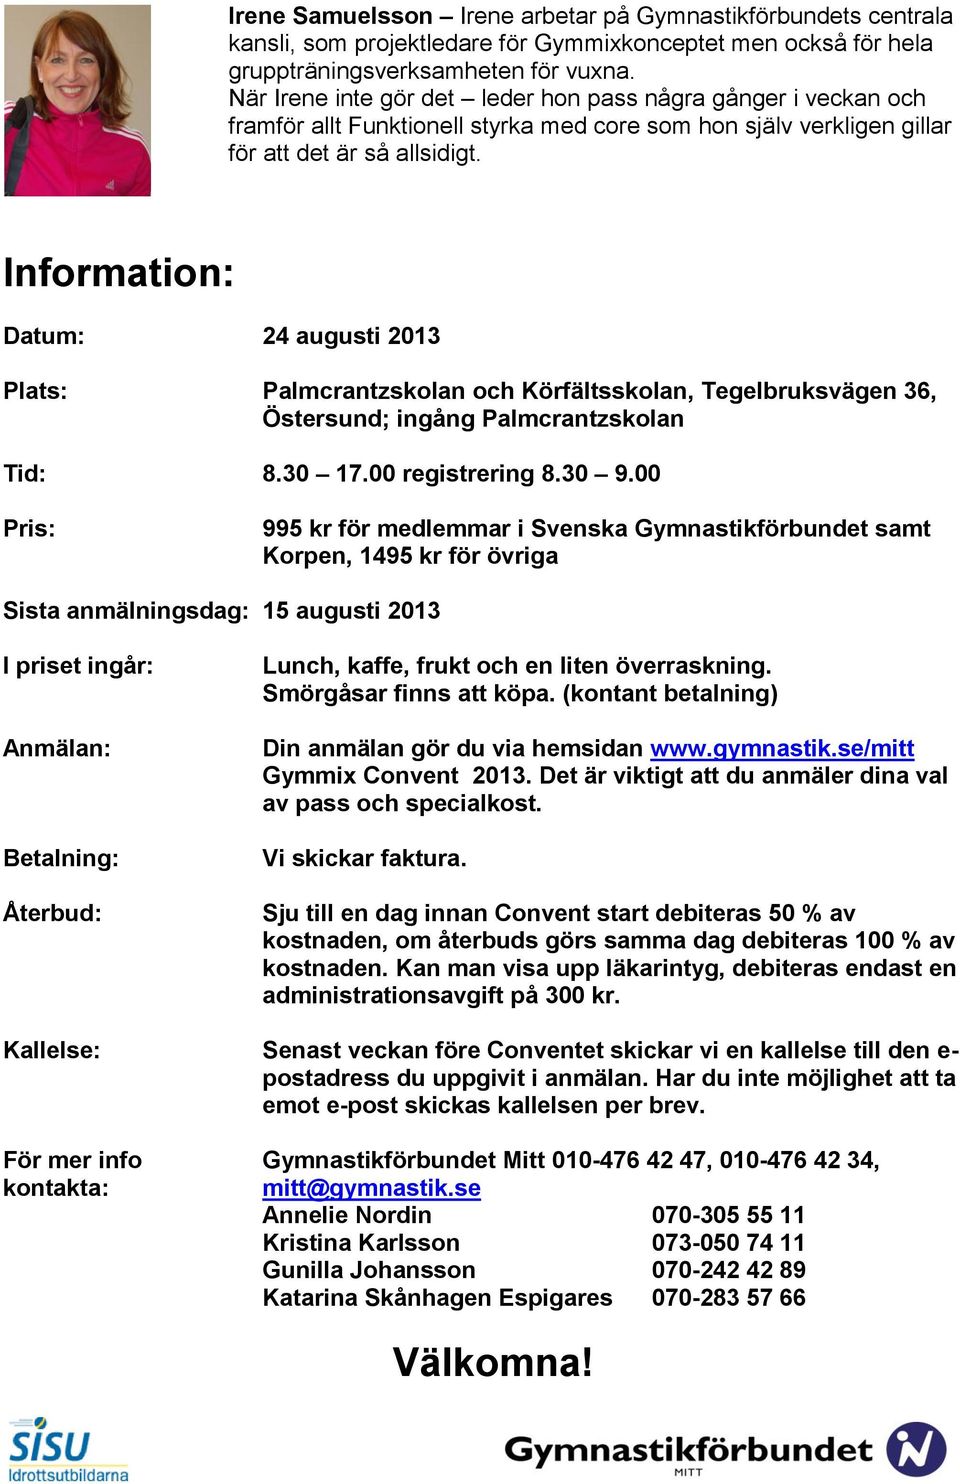 Information: Datum: 24 augusti 2013 Plats: Palmcrantzskolan och Körfältsskolan, Tegelbruksvägen 36, Östersund; ingång Palmcrantzskolan Tid: 8.30 17.00 registrering 8.30 9.